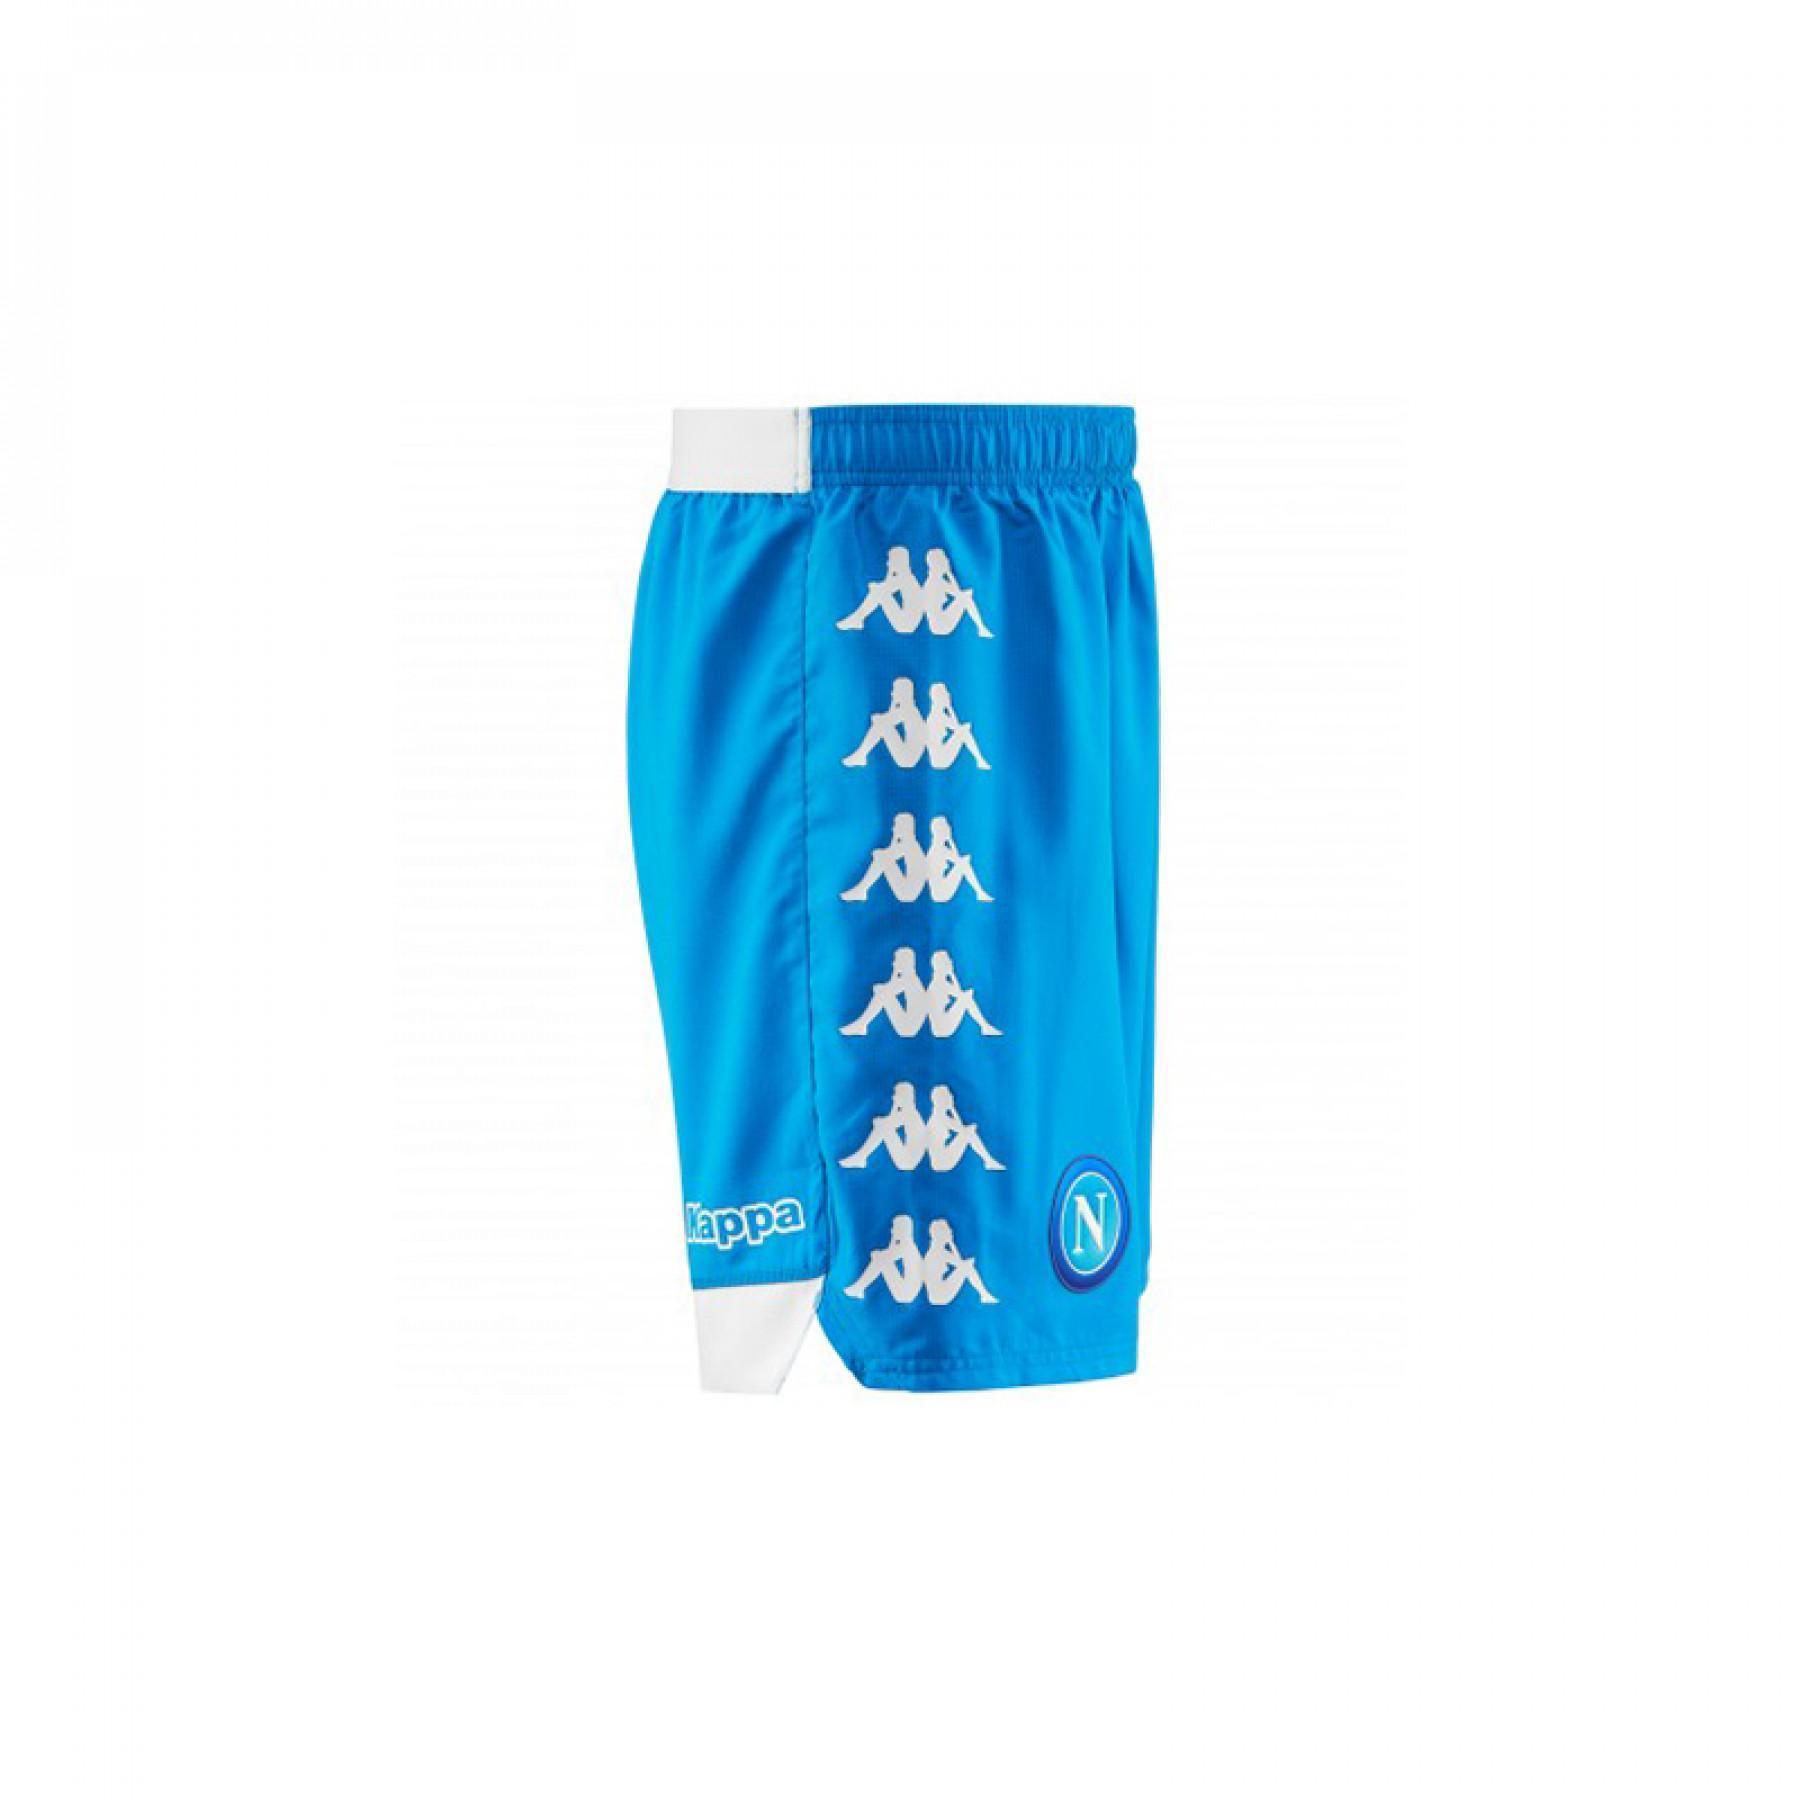 Home shorts SSC Napoli bleu 2018/19